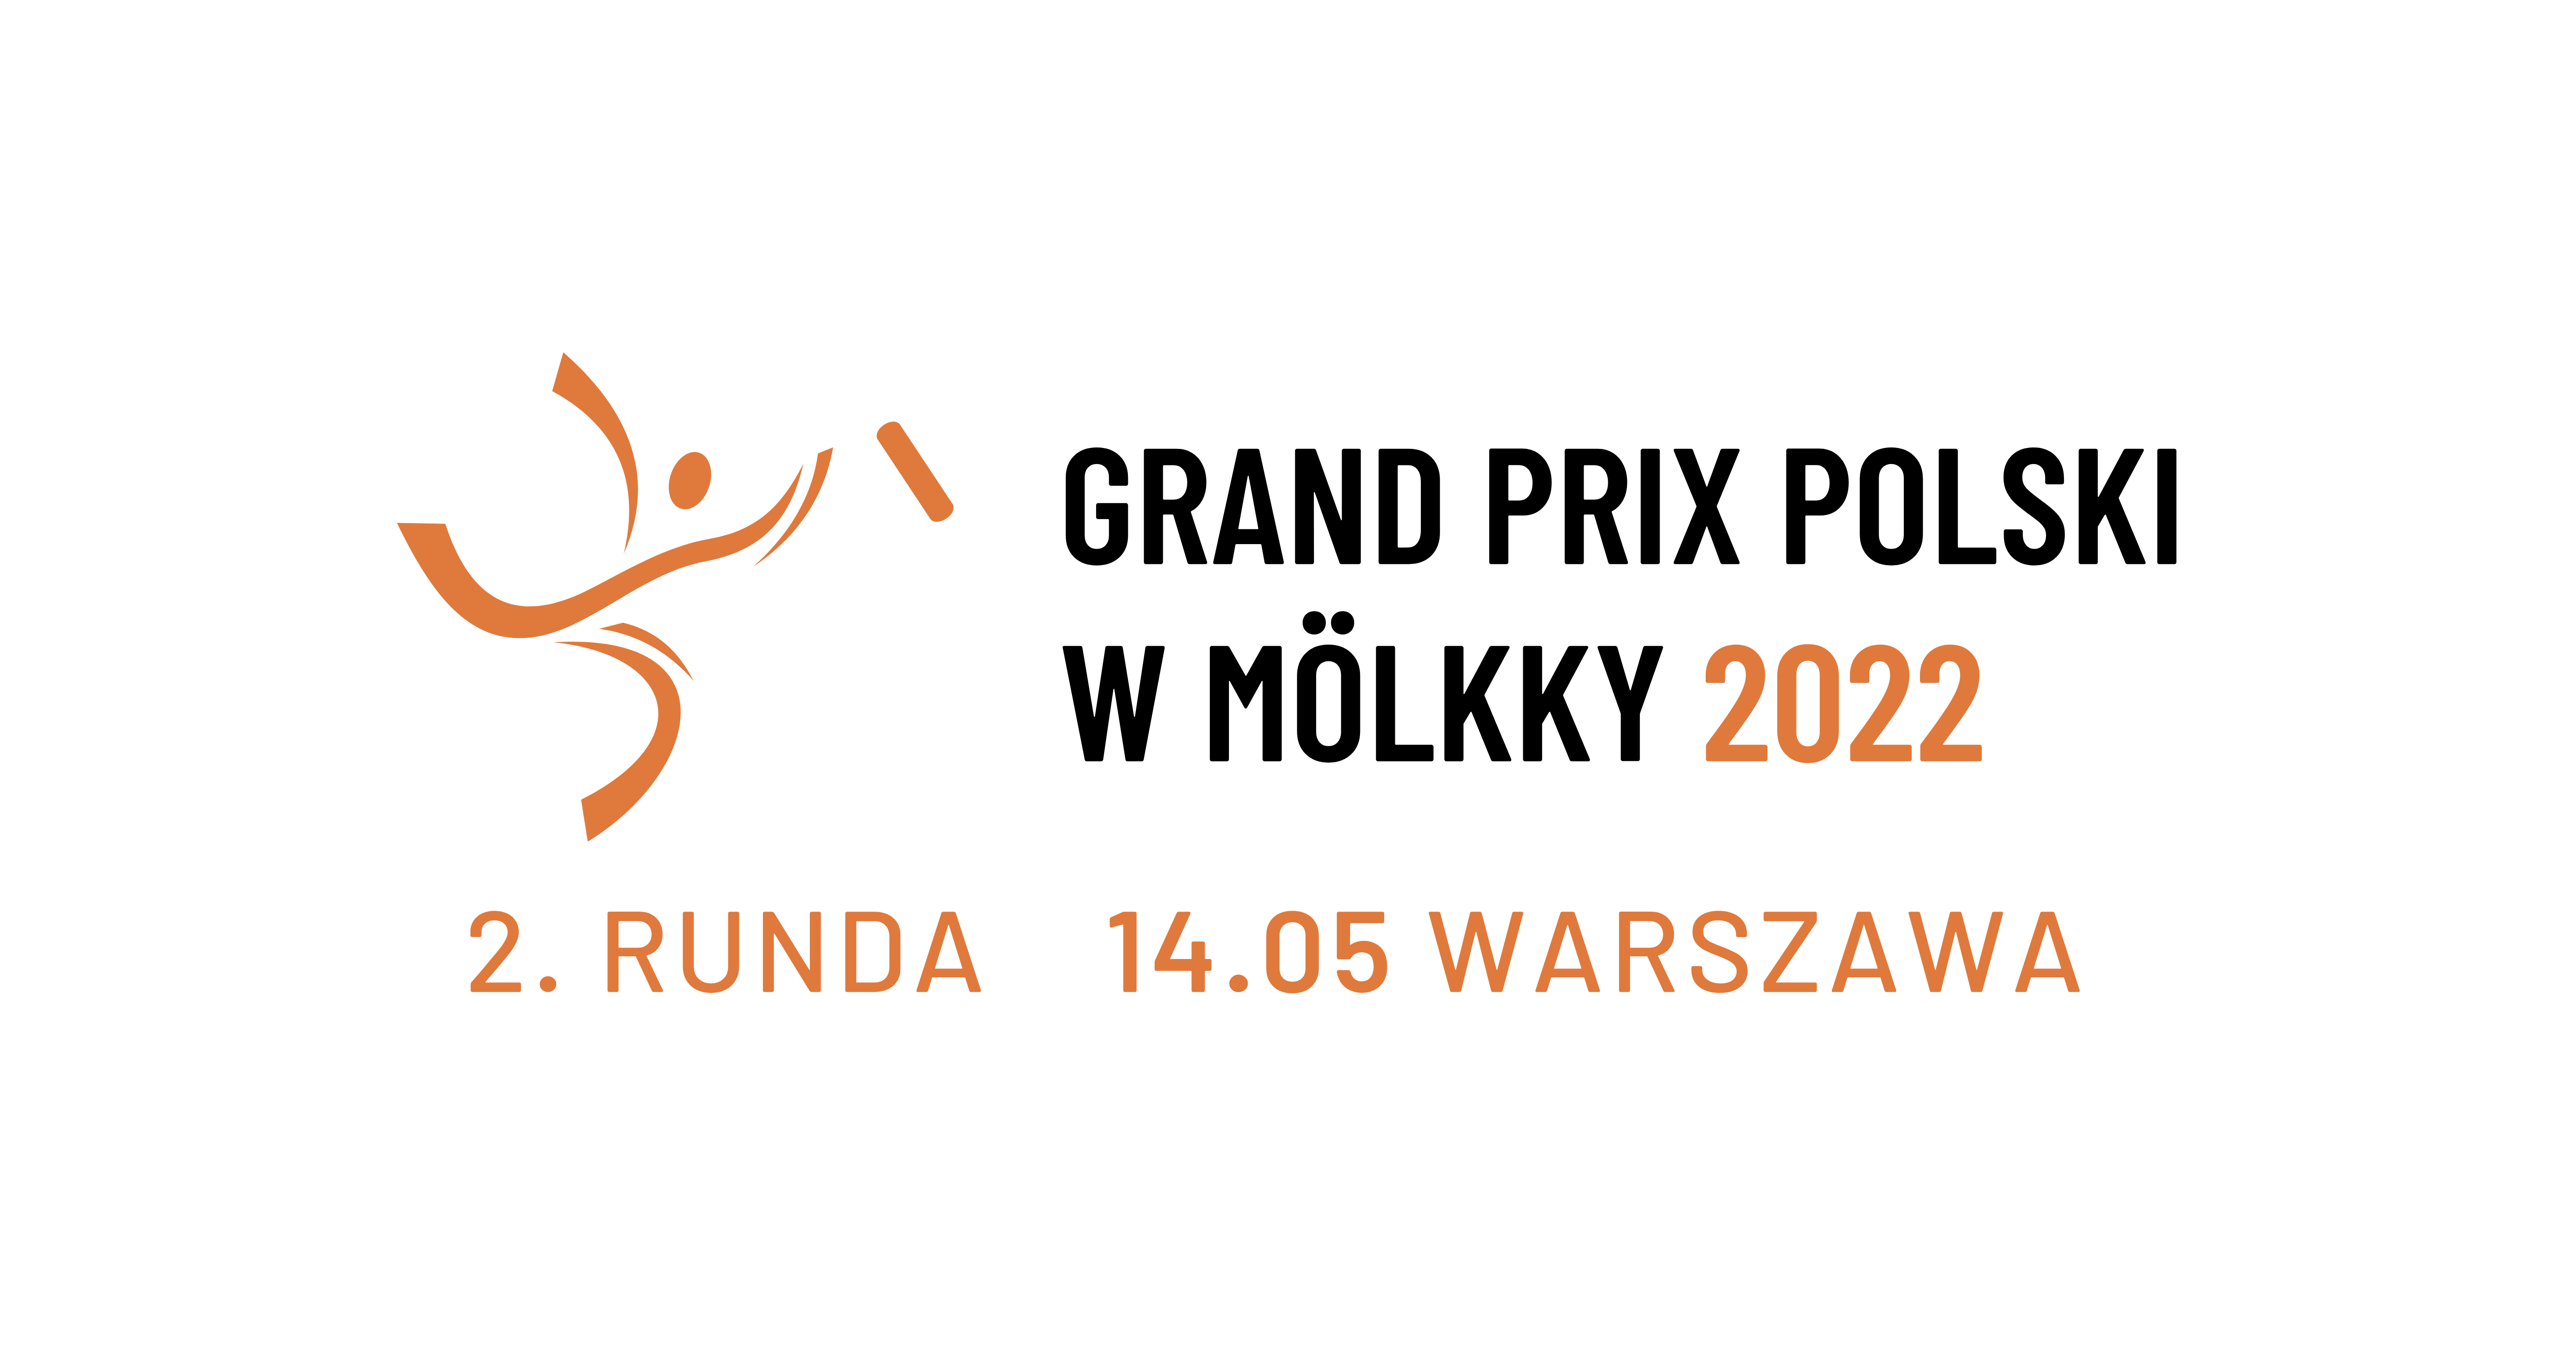 Grand Prix of Poland - event 2/6